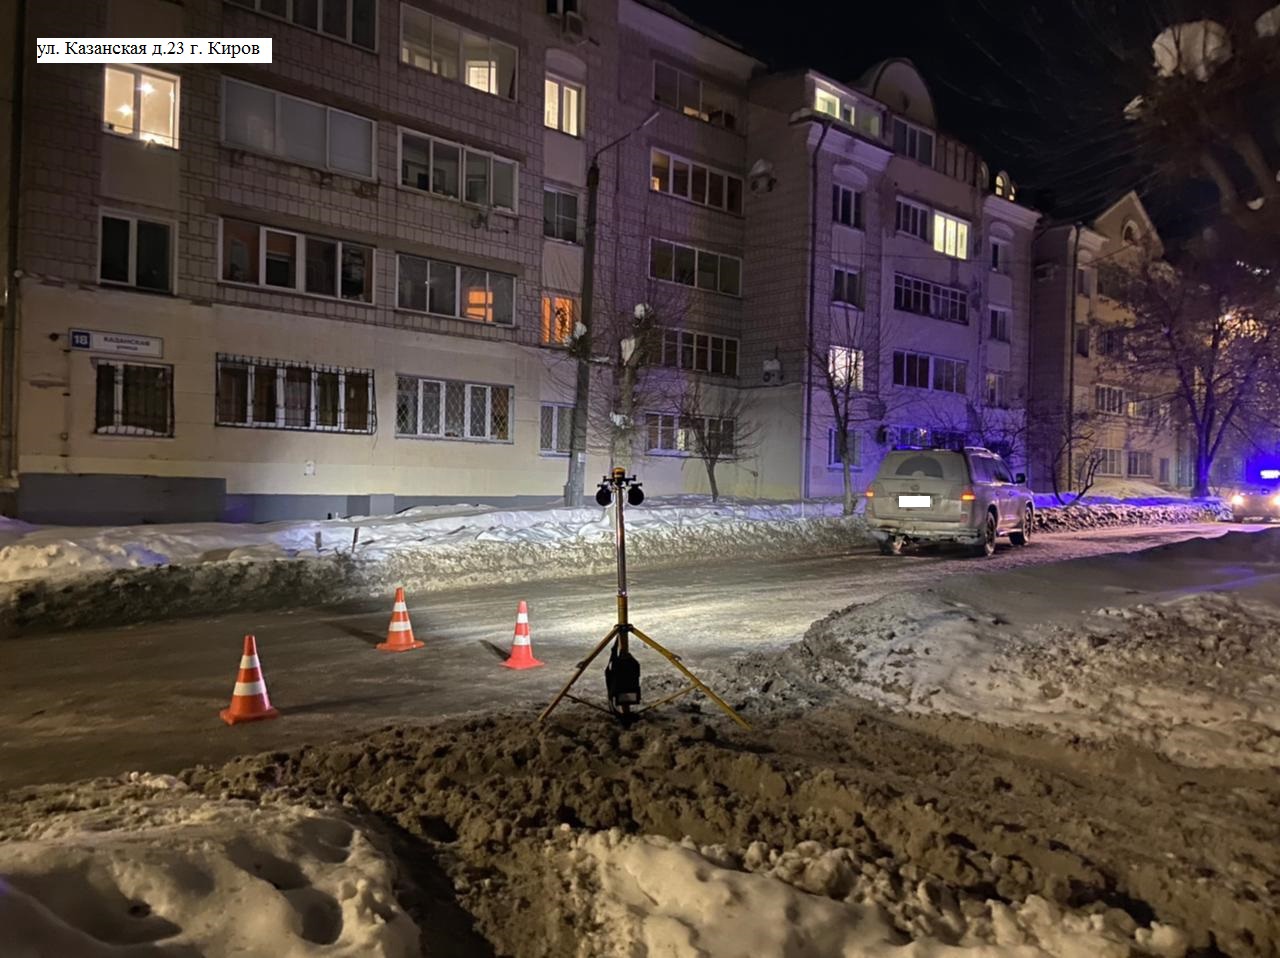 В Кирове на Казанской водитель иномарки сбил двух пенсионерок